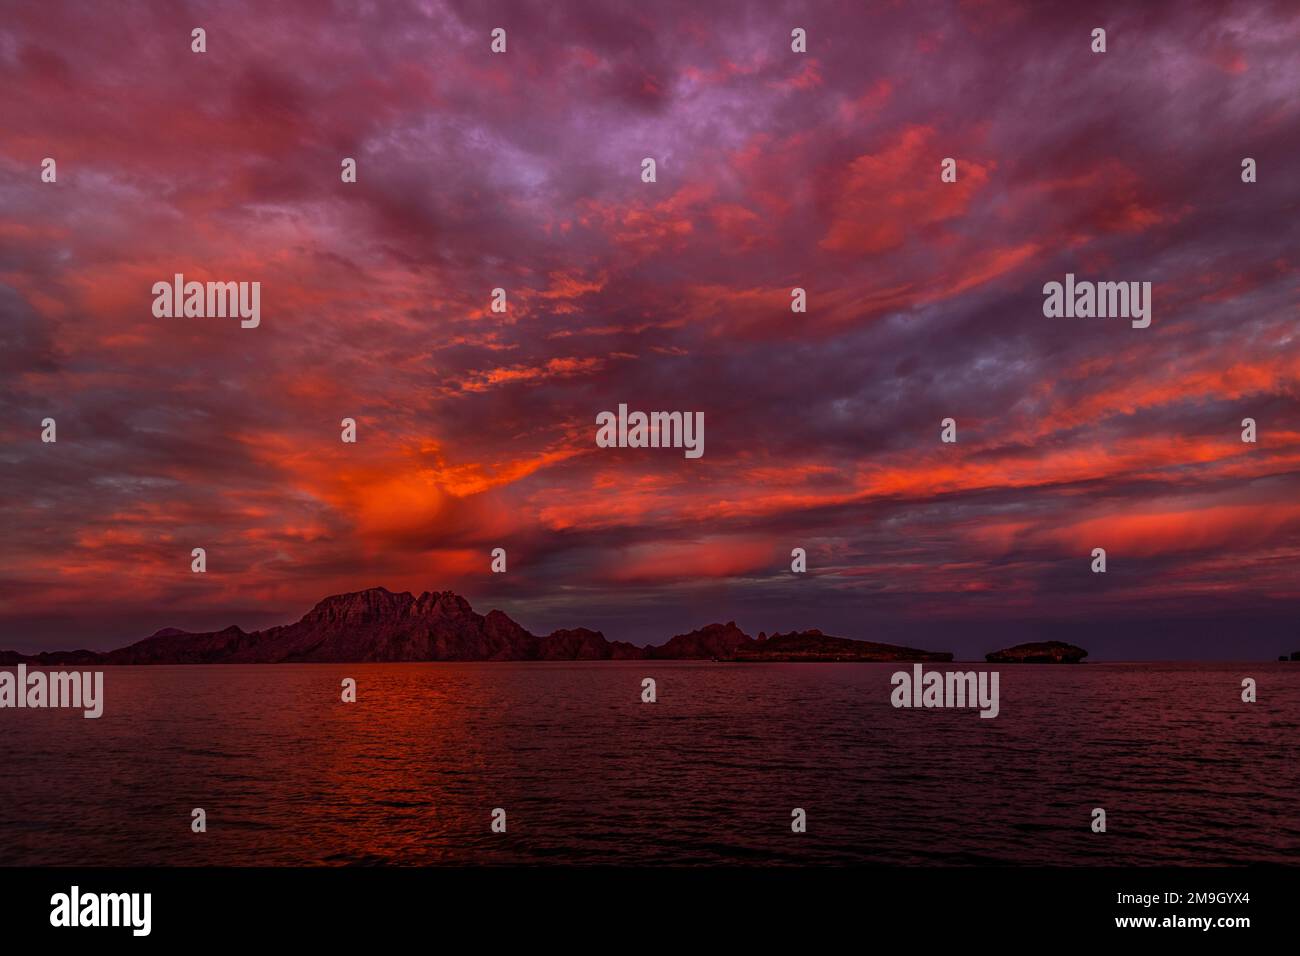 Danzante Island und Golf von Kalifornien bei Sonnenuntergang, Baja California Sur, Mexiko Stockfoto